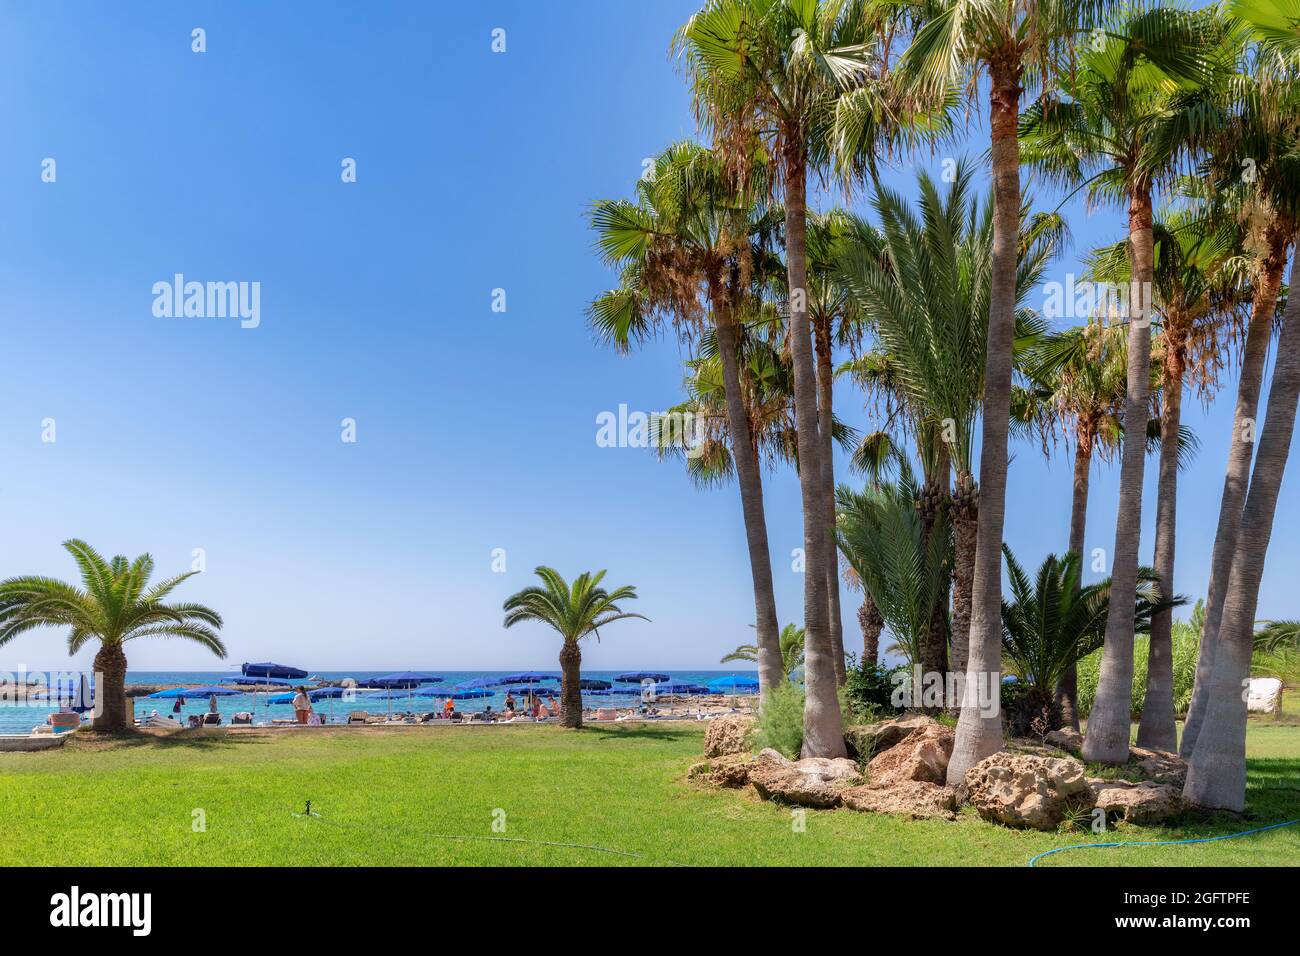 Palmiers sur une plage tropicale à Ayia Napa, Chypre. Banque D'Images